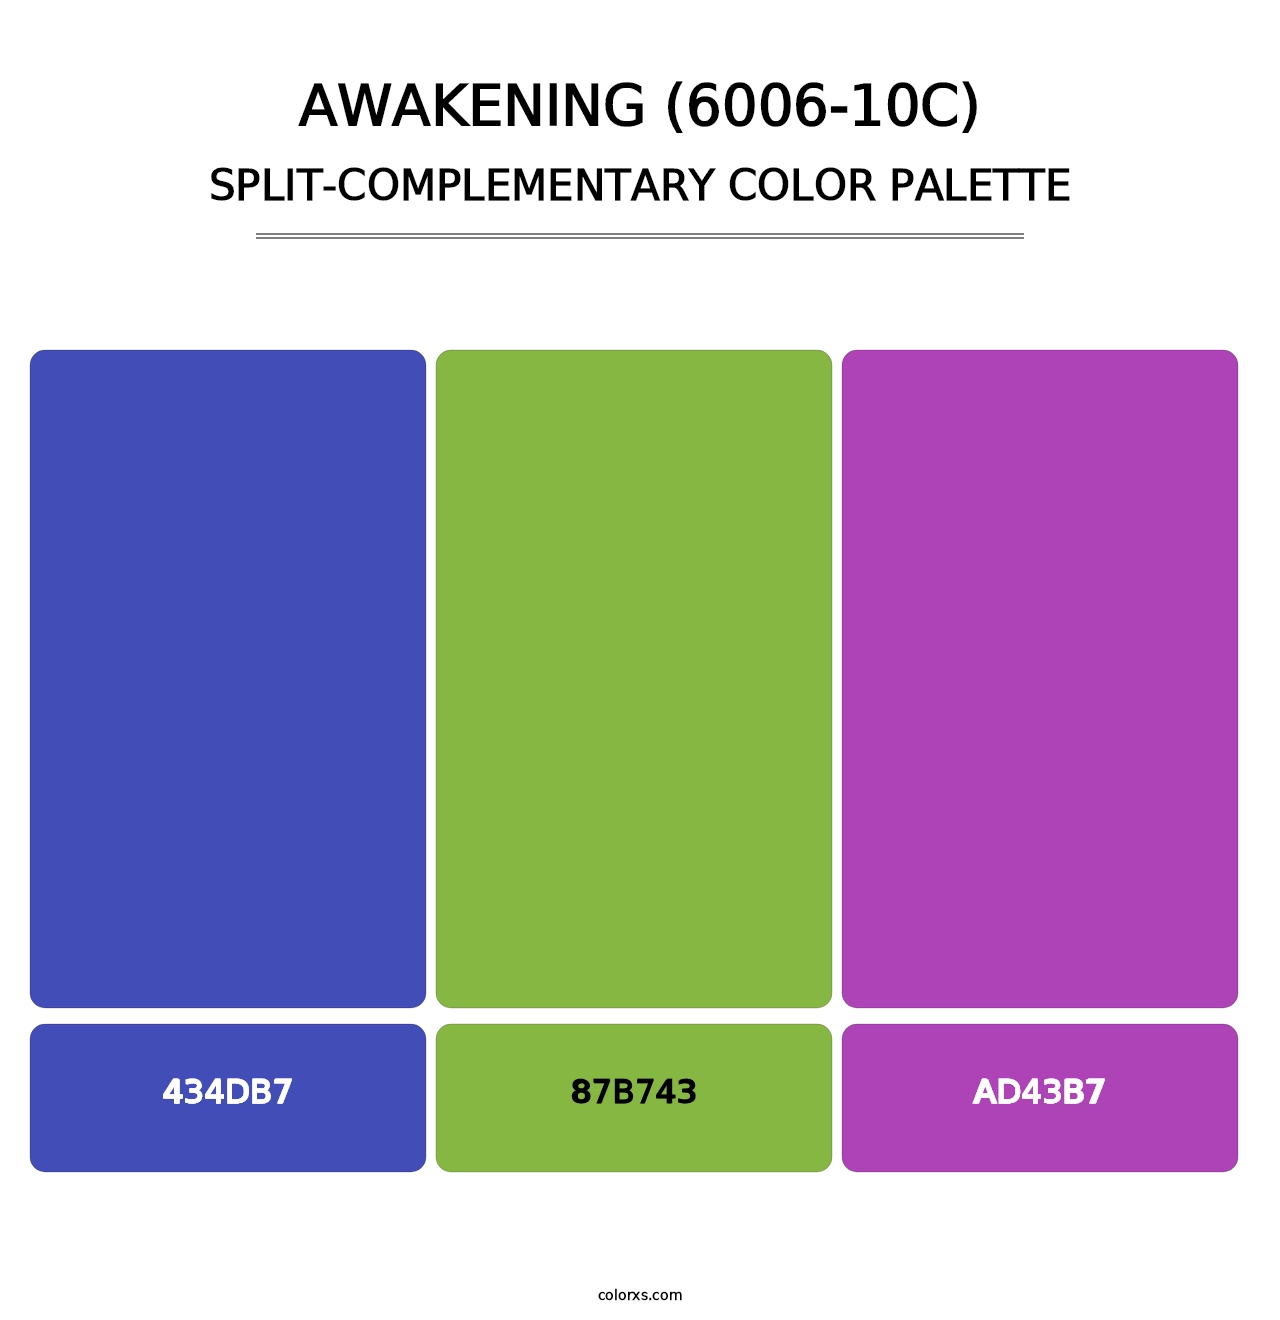 Awakening (6006-10C) - Split-Complementary Color Palette